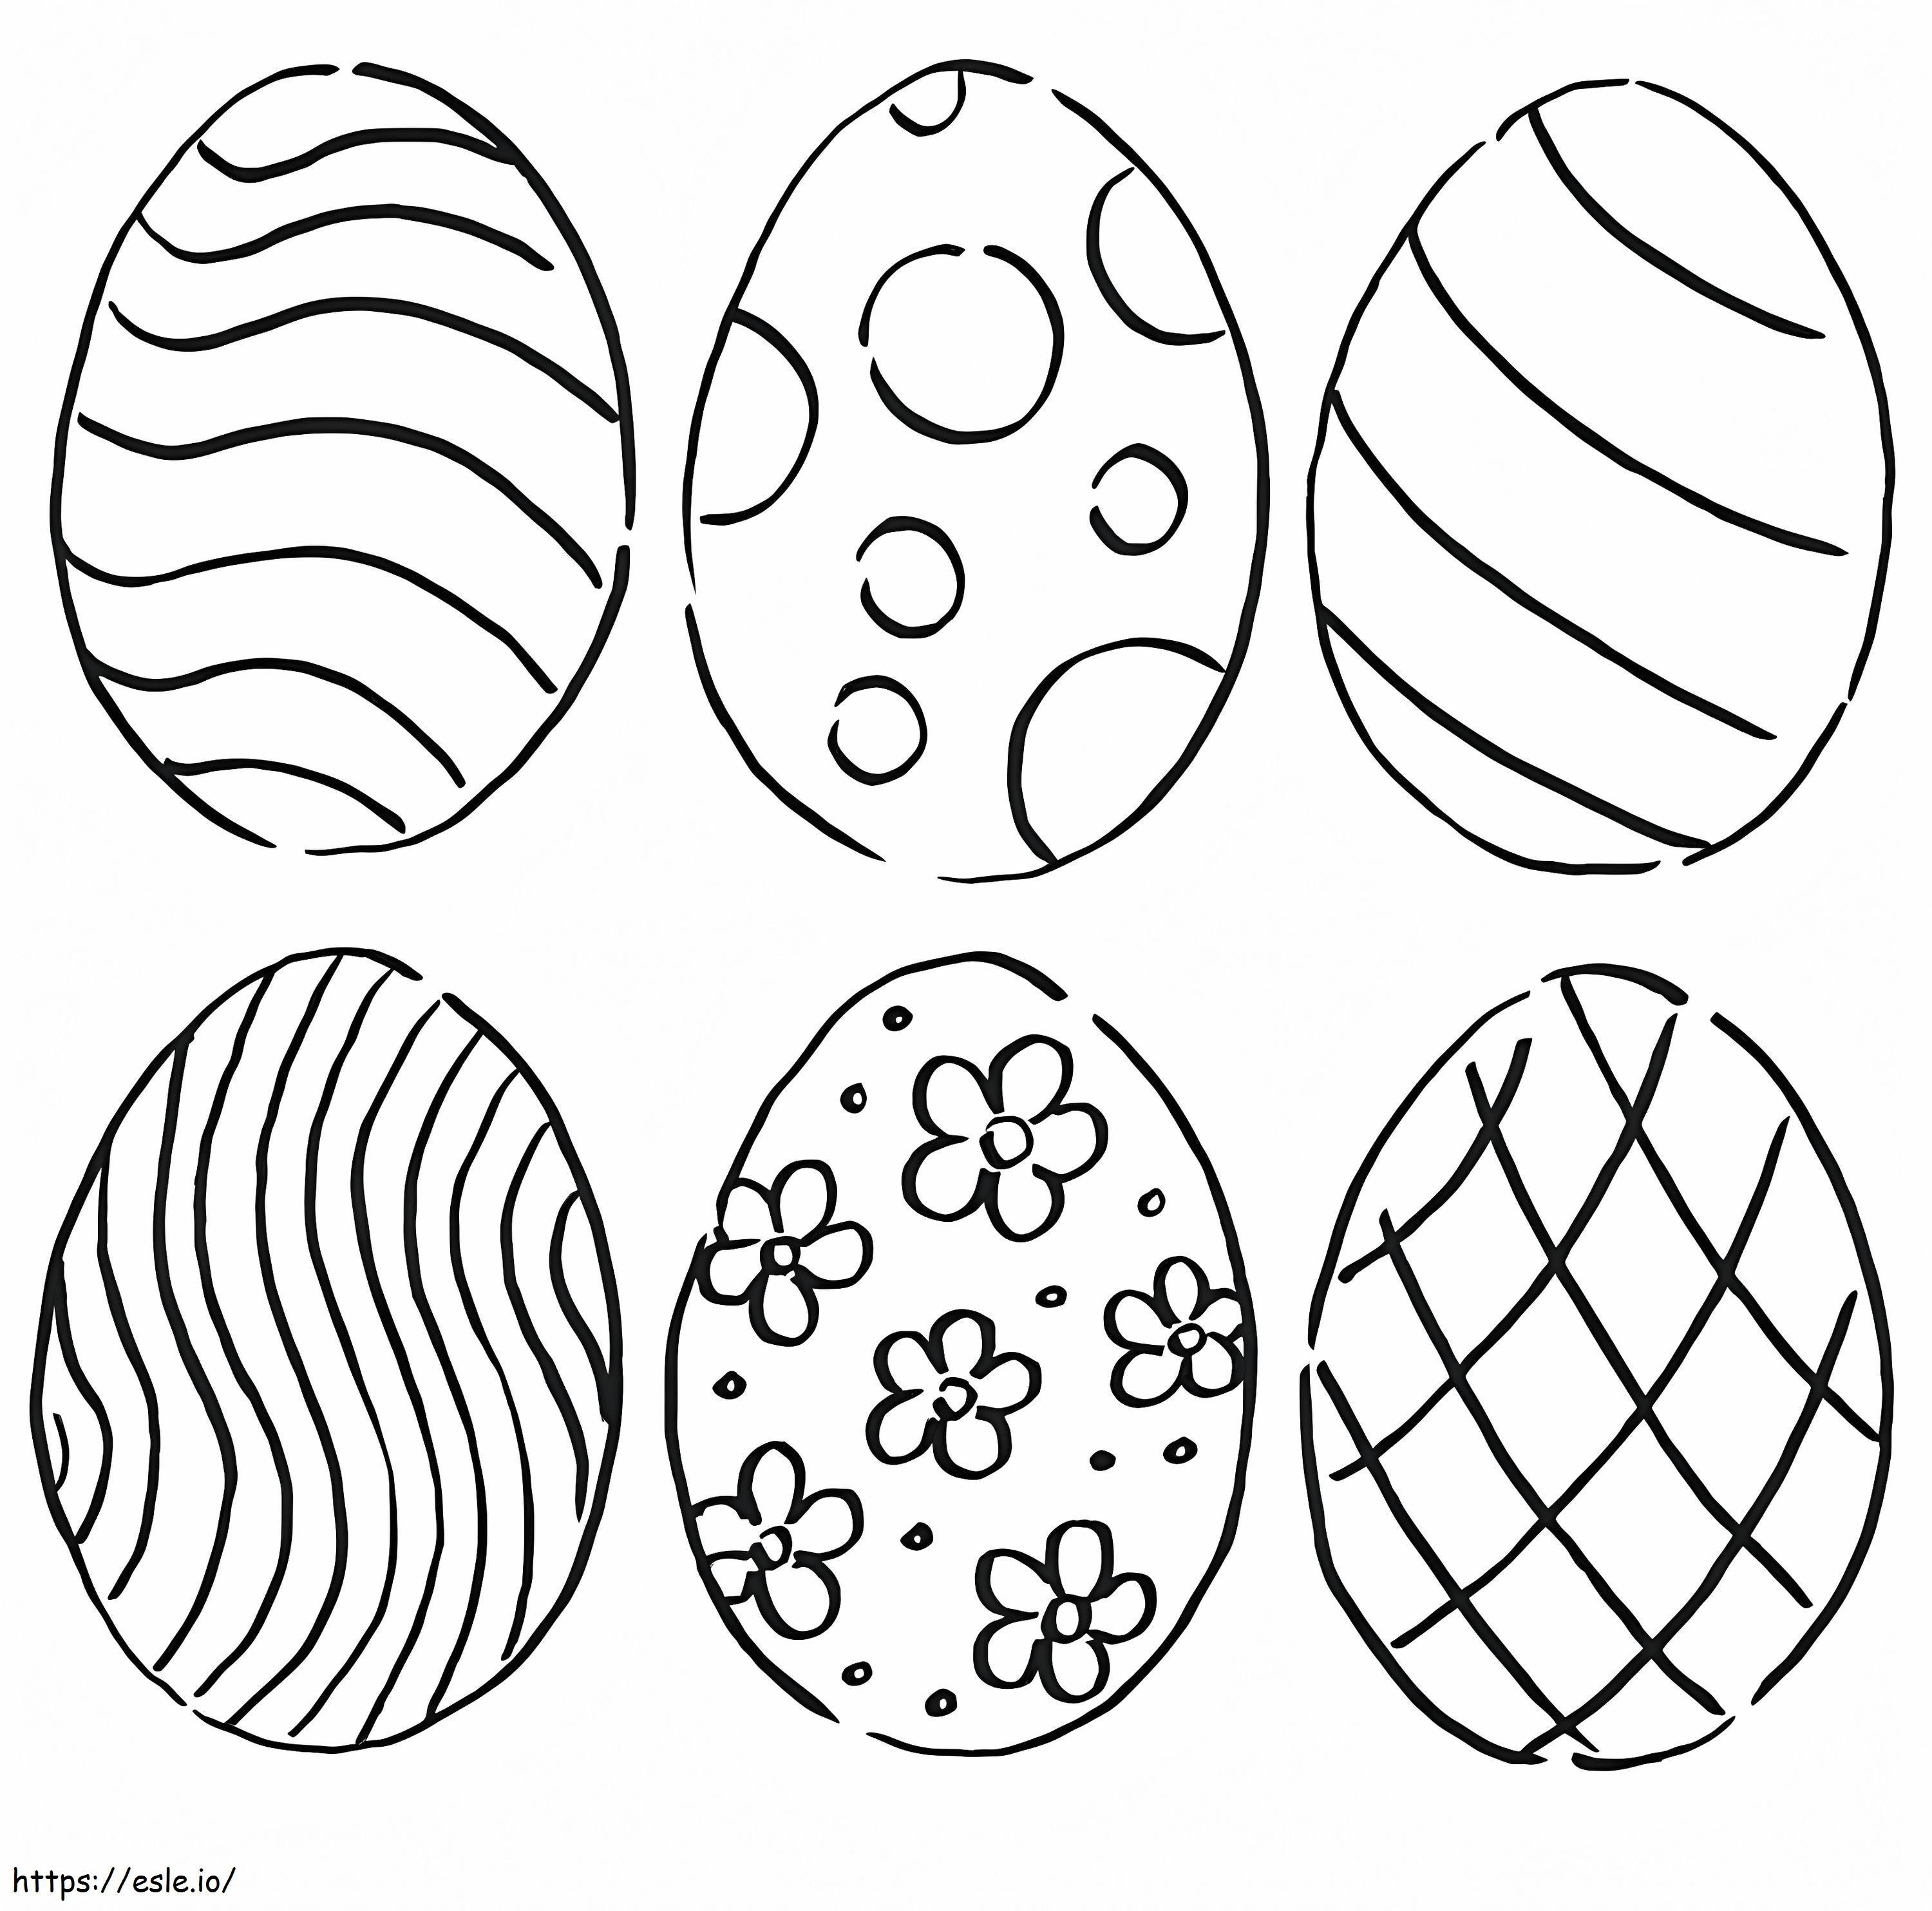 Ovos de Páscoa 6 para colorir